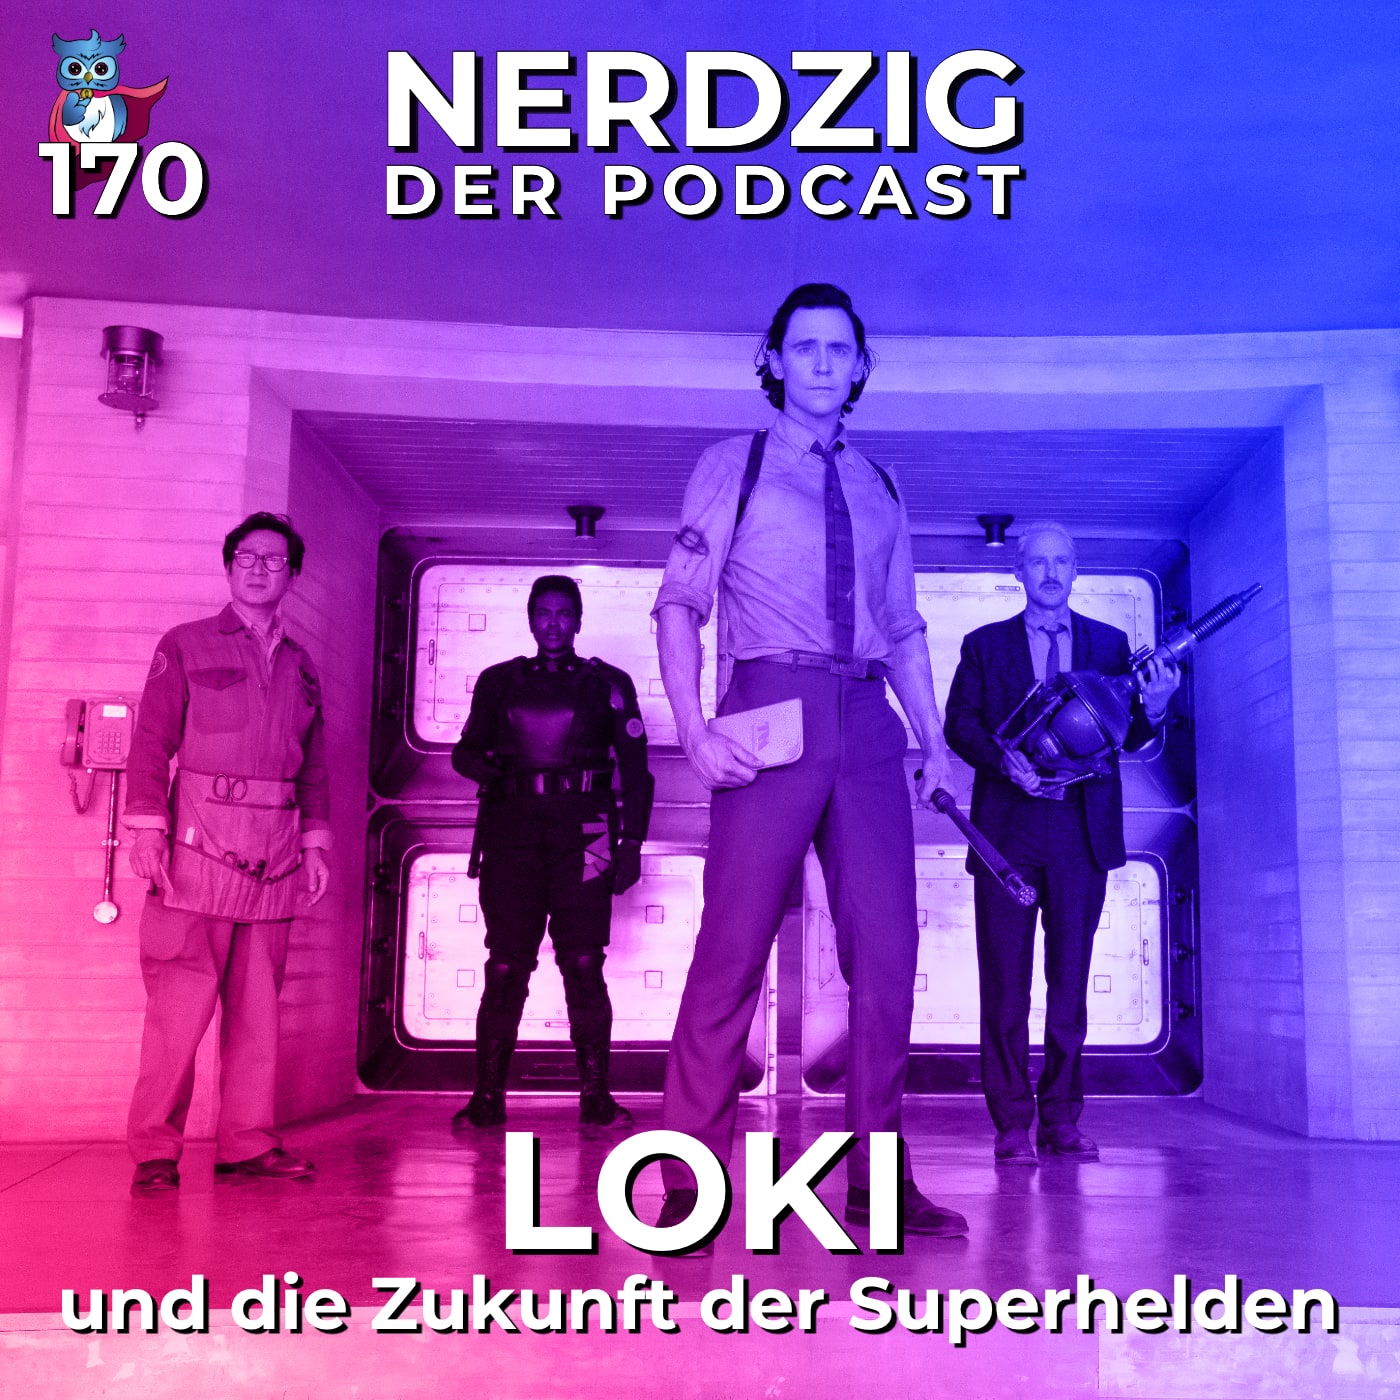 Nerdzig - Der Podcast #170 – Loki: Rückblick auf die 2. Staffel und die Zukunft der Superhelden